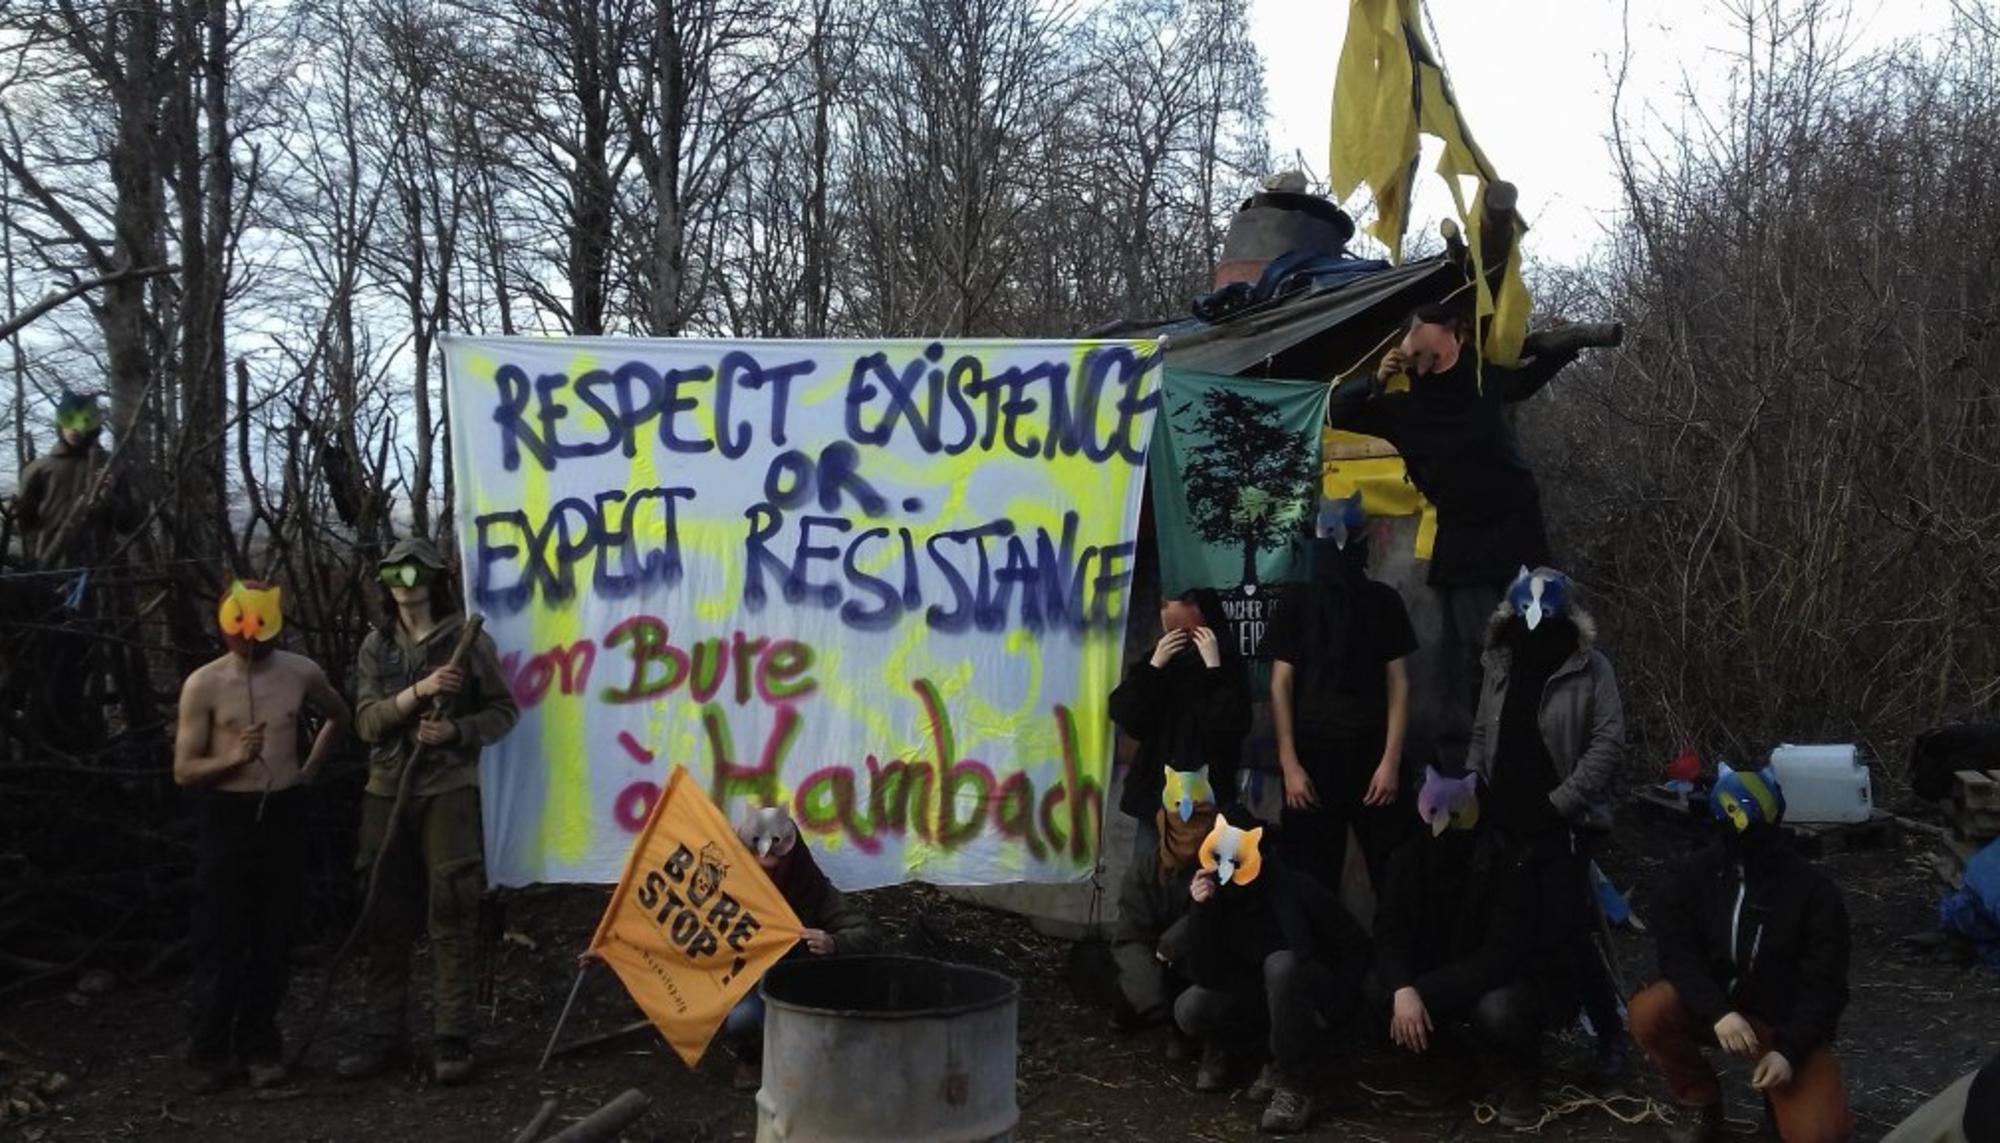 Las protestas en Bure contra los residuos radiactivos han sido respondidas con represión estatal. Fuente: Beyond Nuclear International